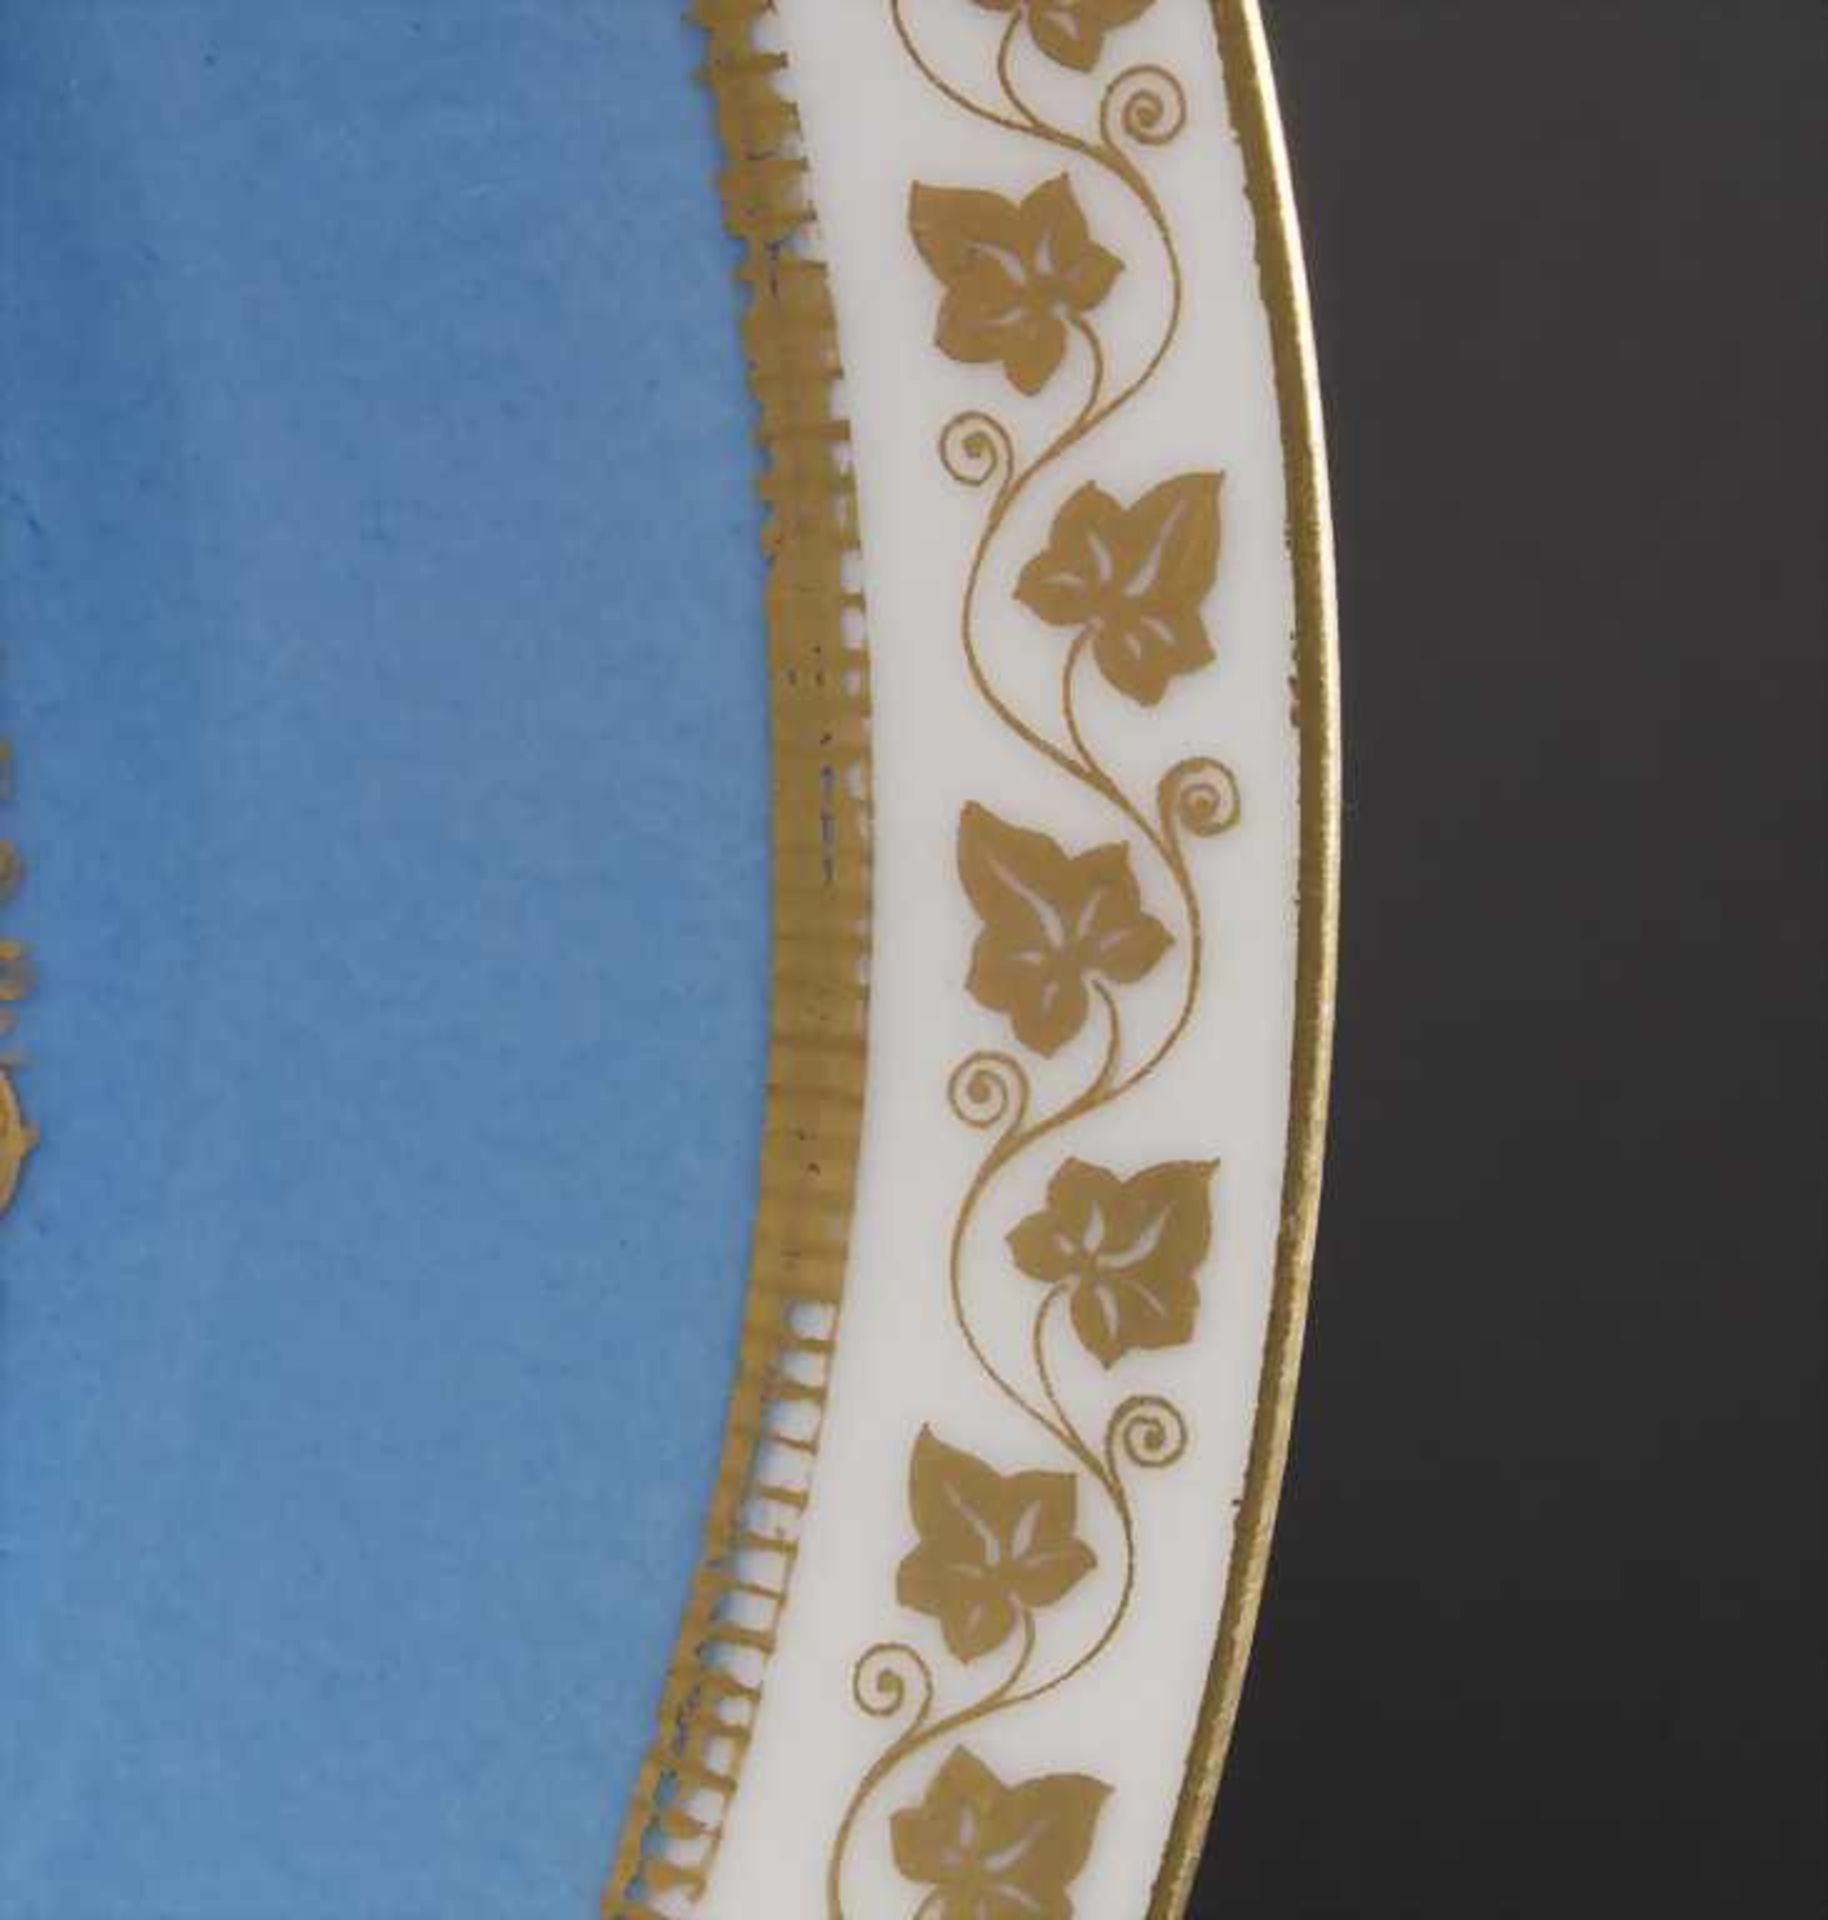 Teller mit 2 Putten und Königsmonogramm / A plate with 2 cherubs and king's monogram, Sèvres, - Image 3 of 5